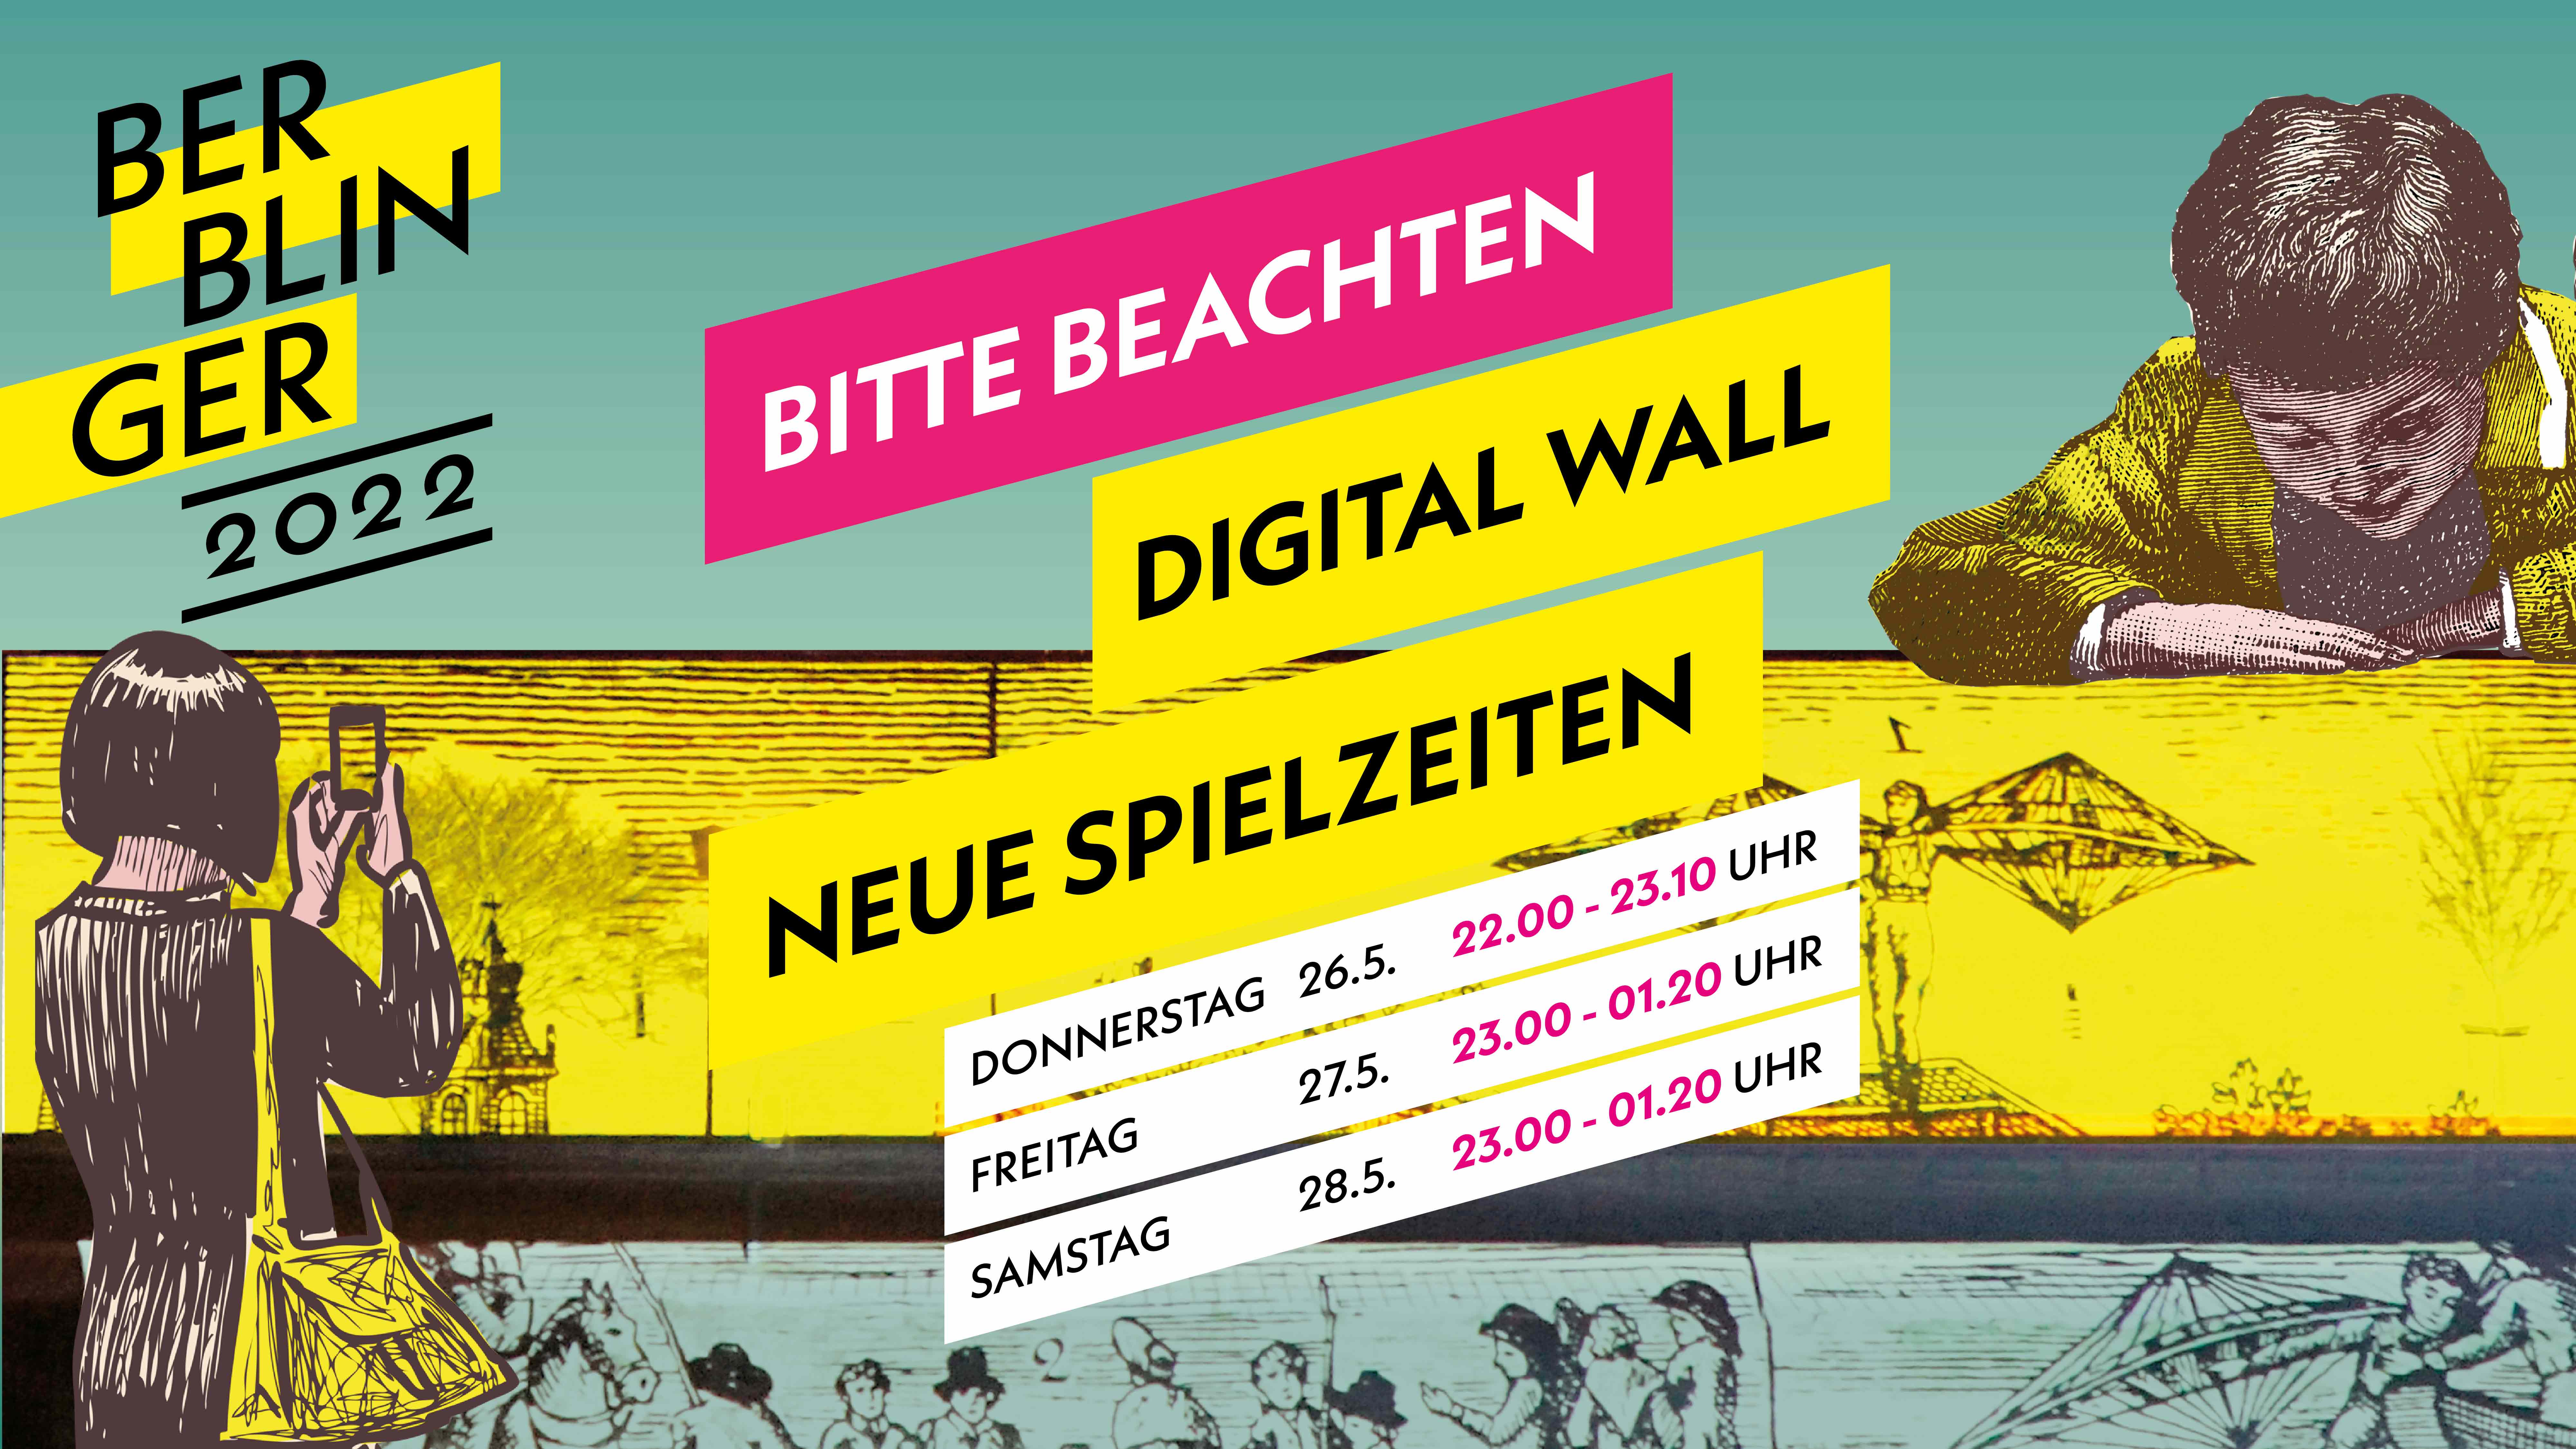 Berblinger Plakat Digital Wall mit neuen Spielzeiten